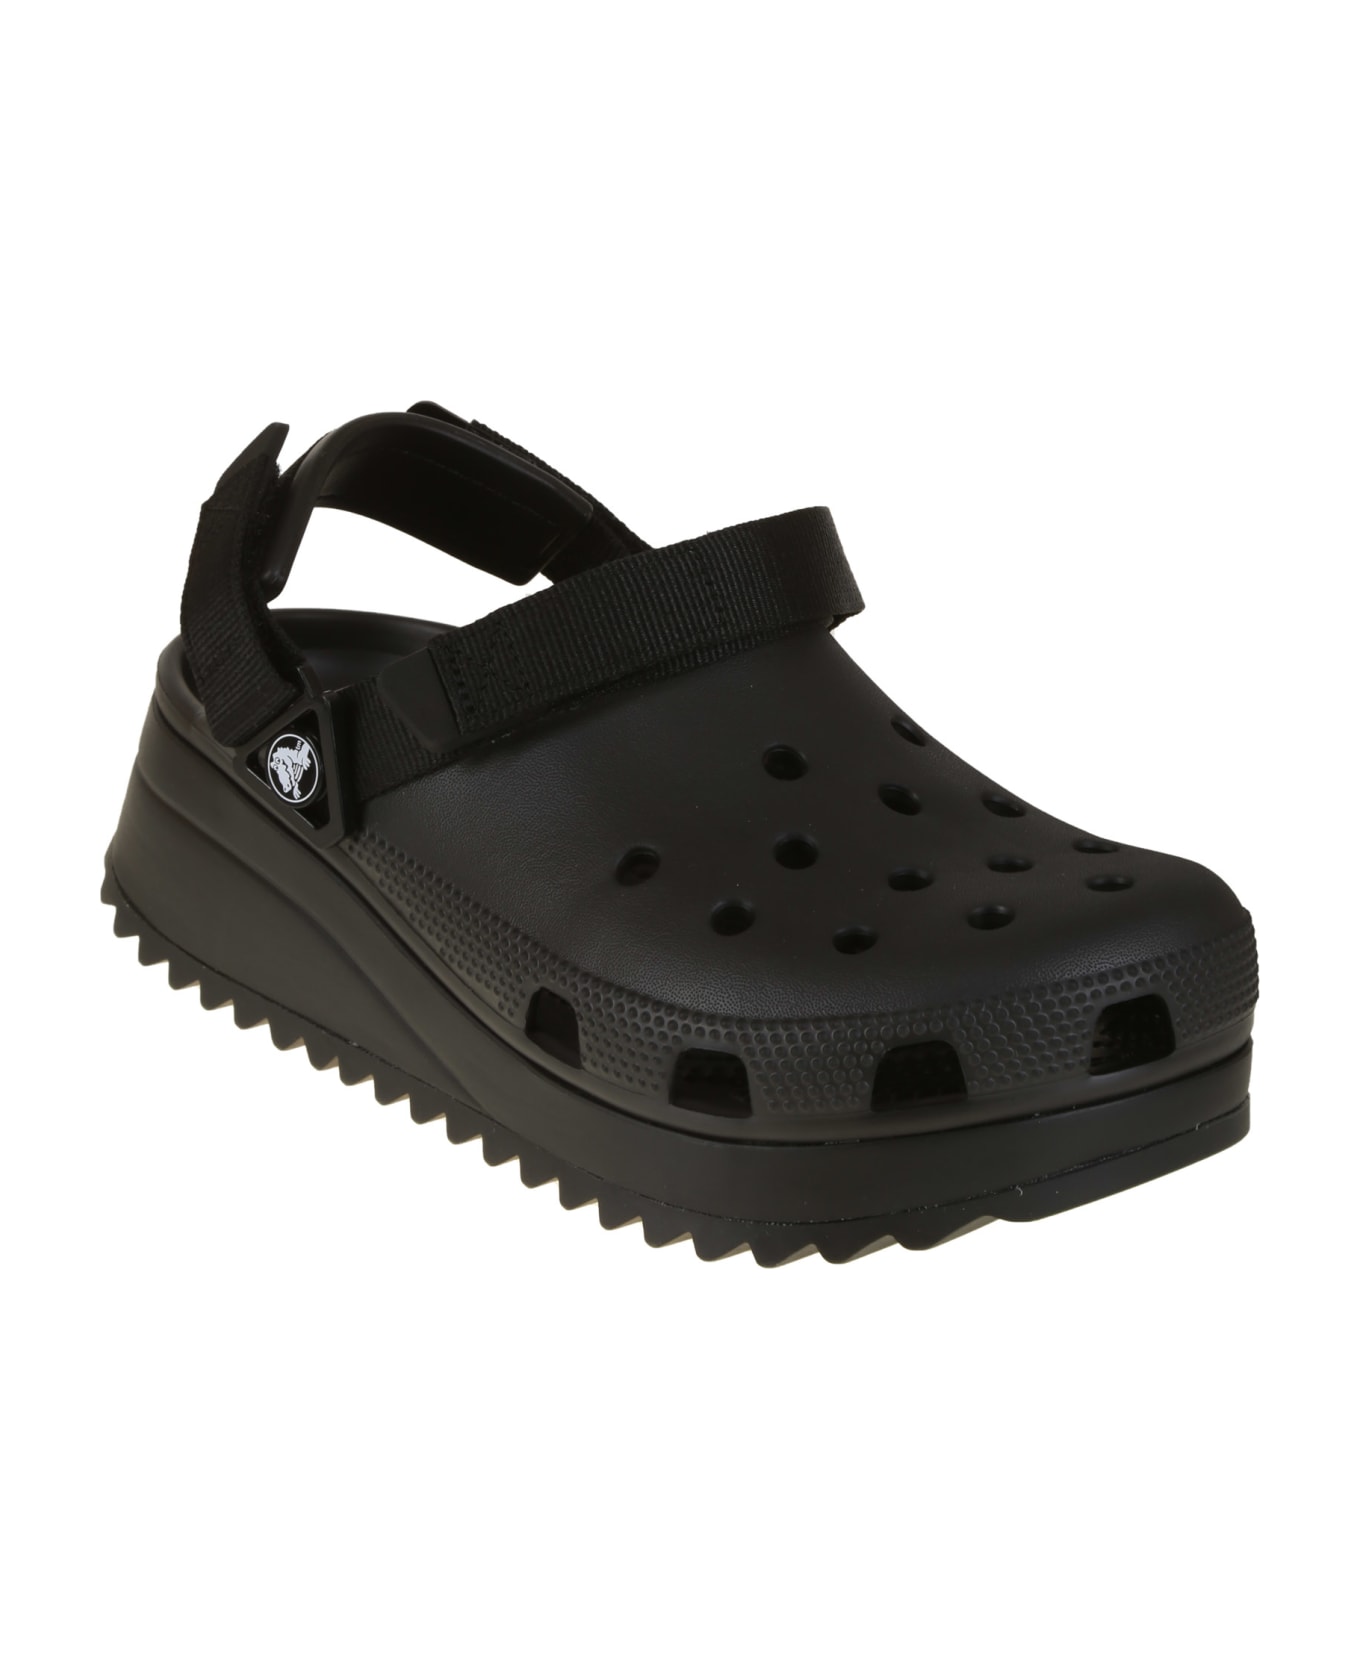 Crocs Classic Hiker Clog - Bkbk Black